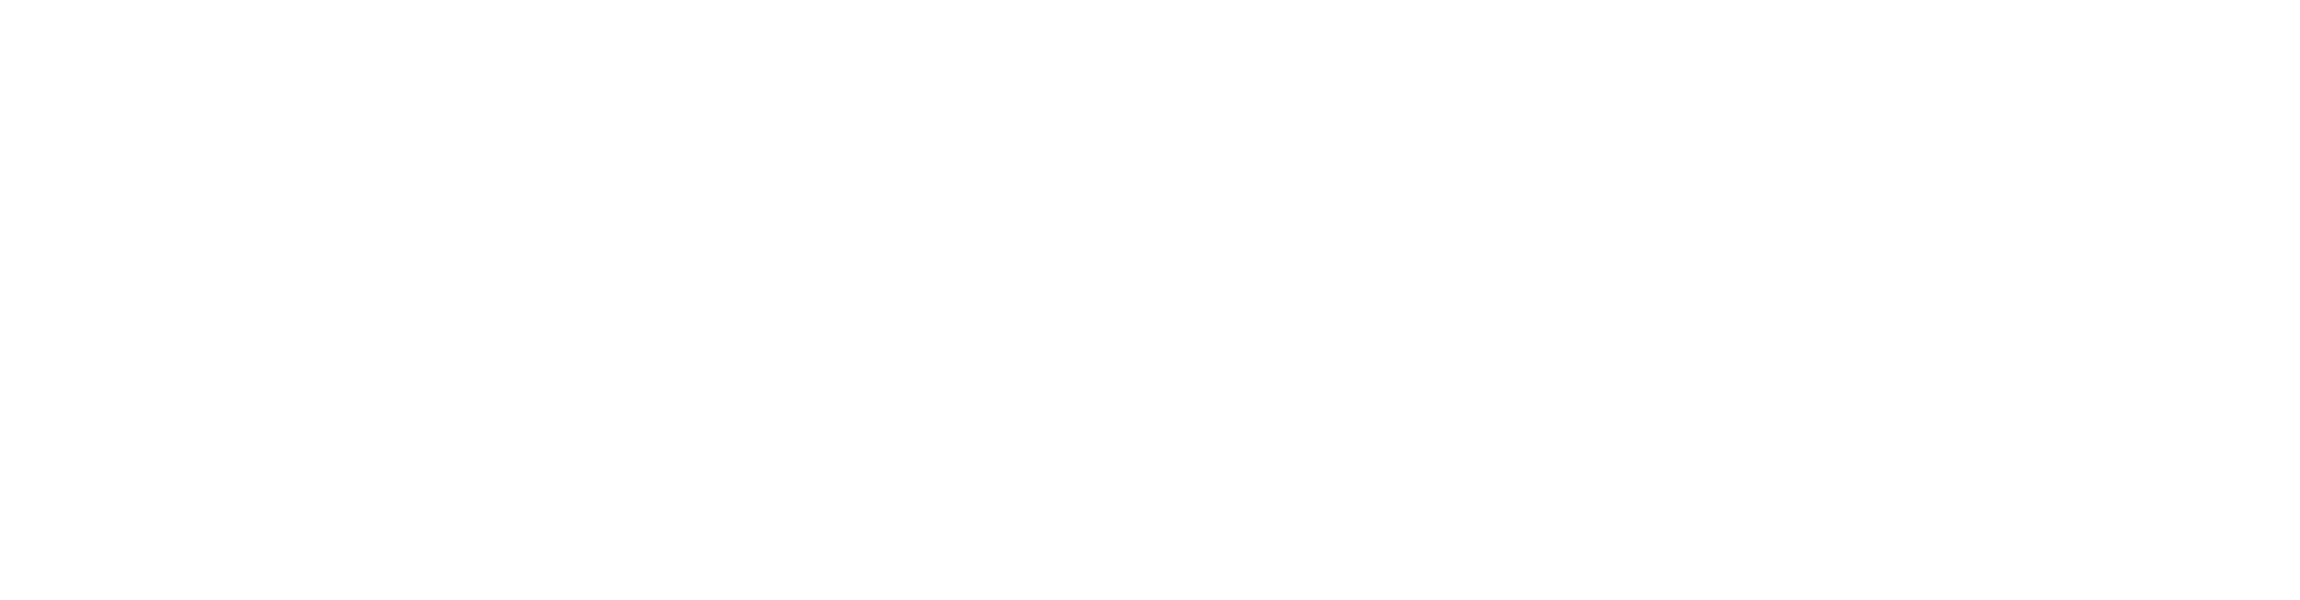 Tourism Australia landscape white